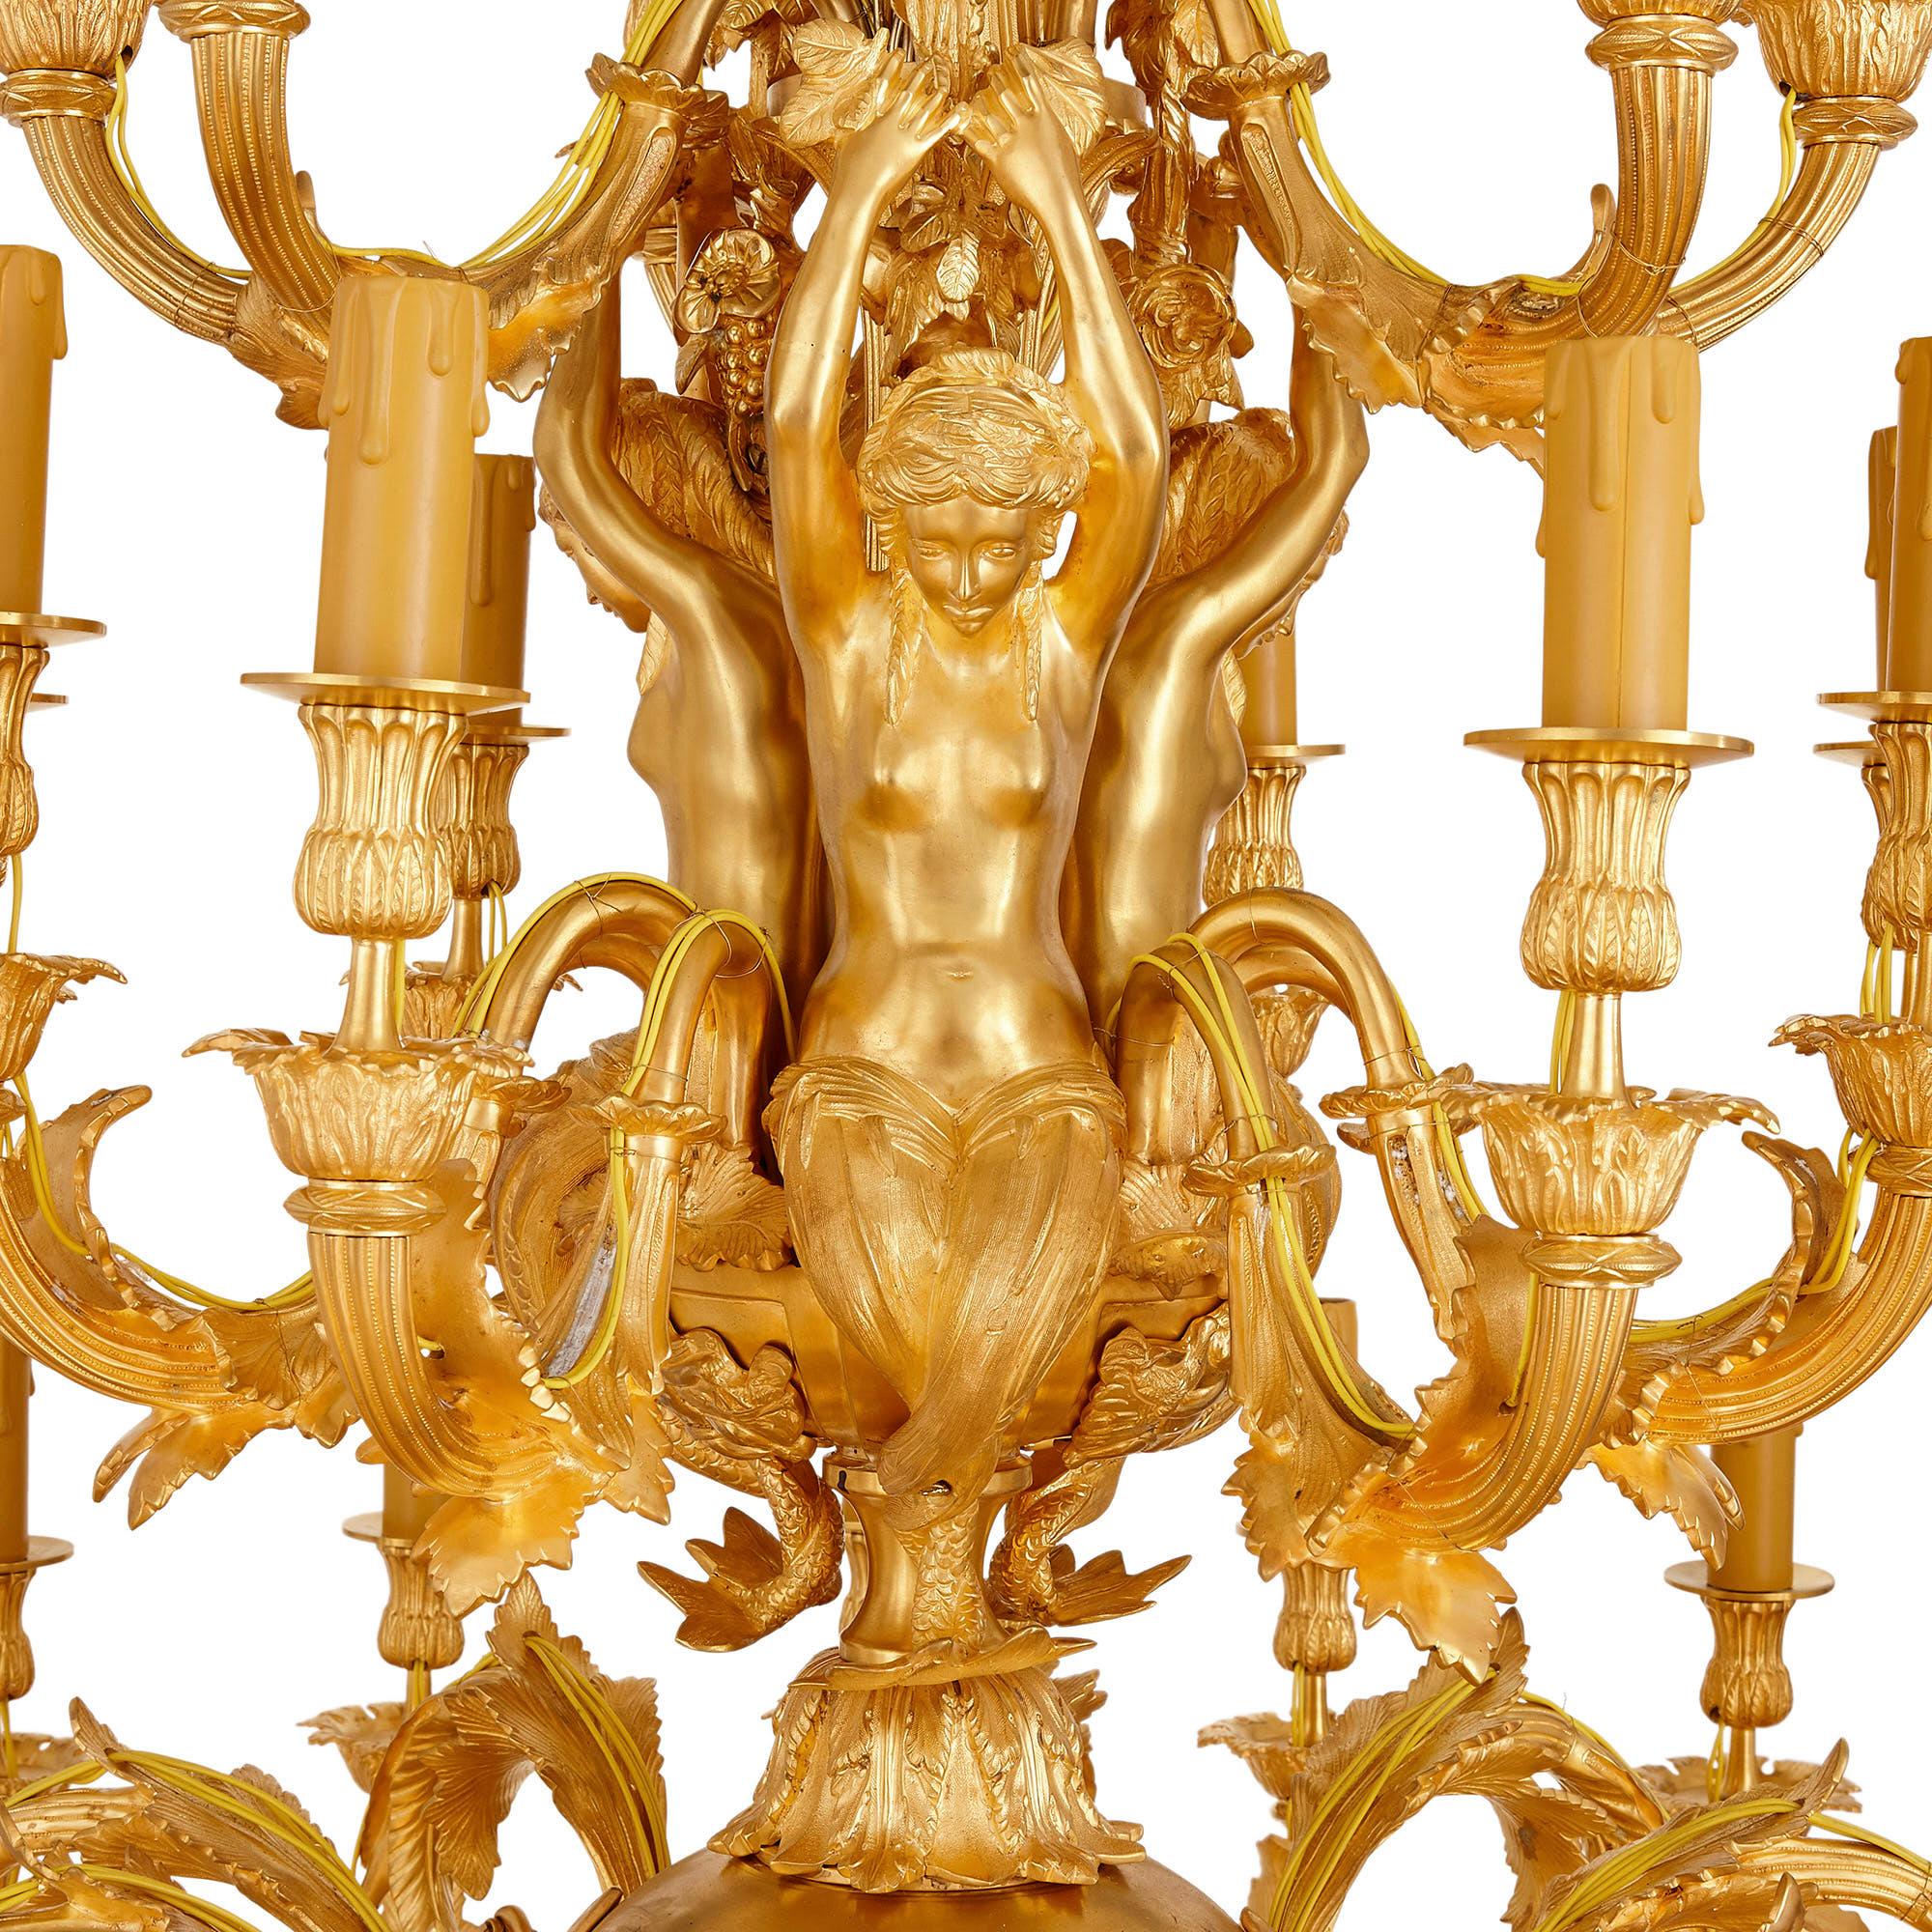 Lustre 33 lampes de style Louis XV en bronze doré
Français, 20ème siècle
Hauteur 156 cm, diamètre 102 cm

Ce magnifique lustre est fabriqué en bronze doré dans le style rococo de Louis XV. Le lustre se compose d'une colonne centrale profilée,